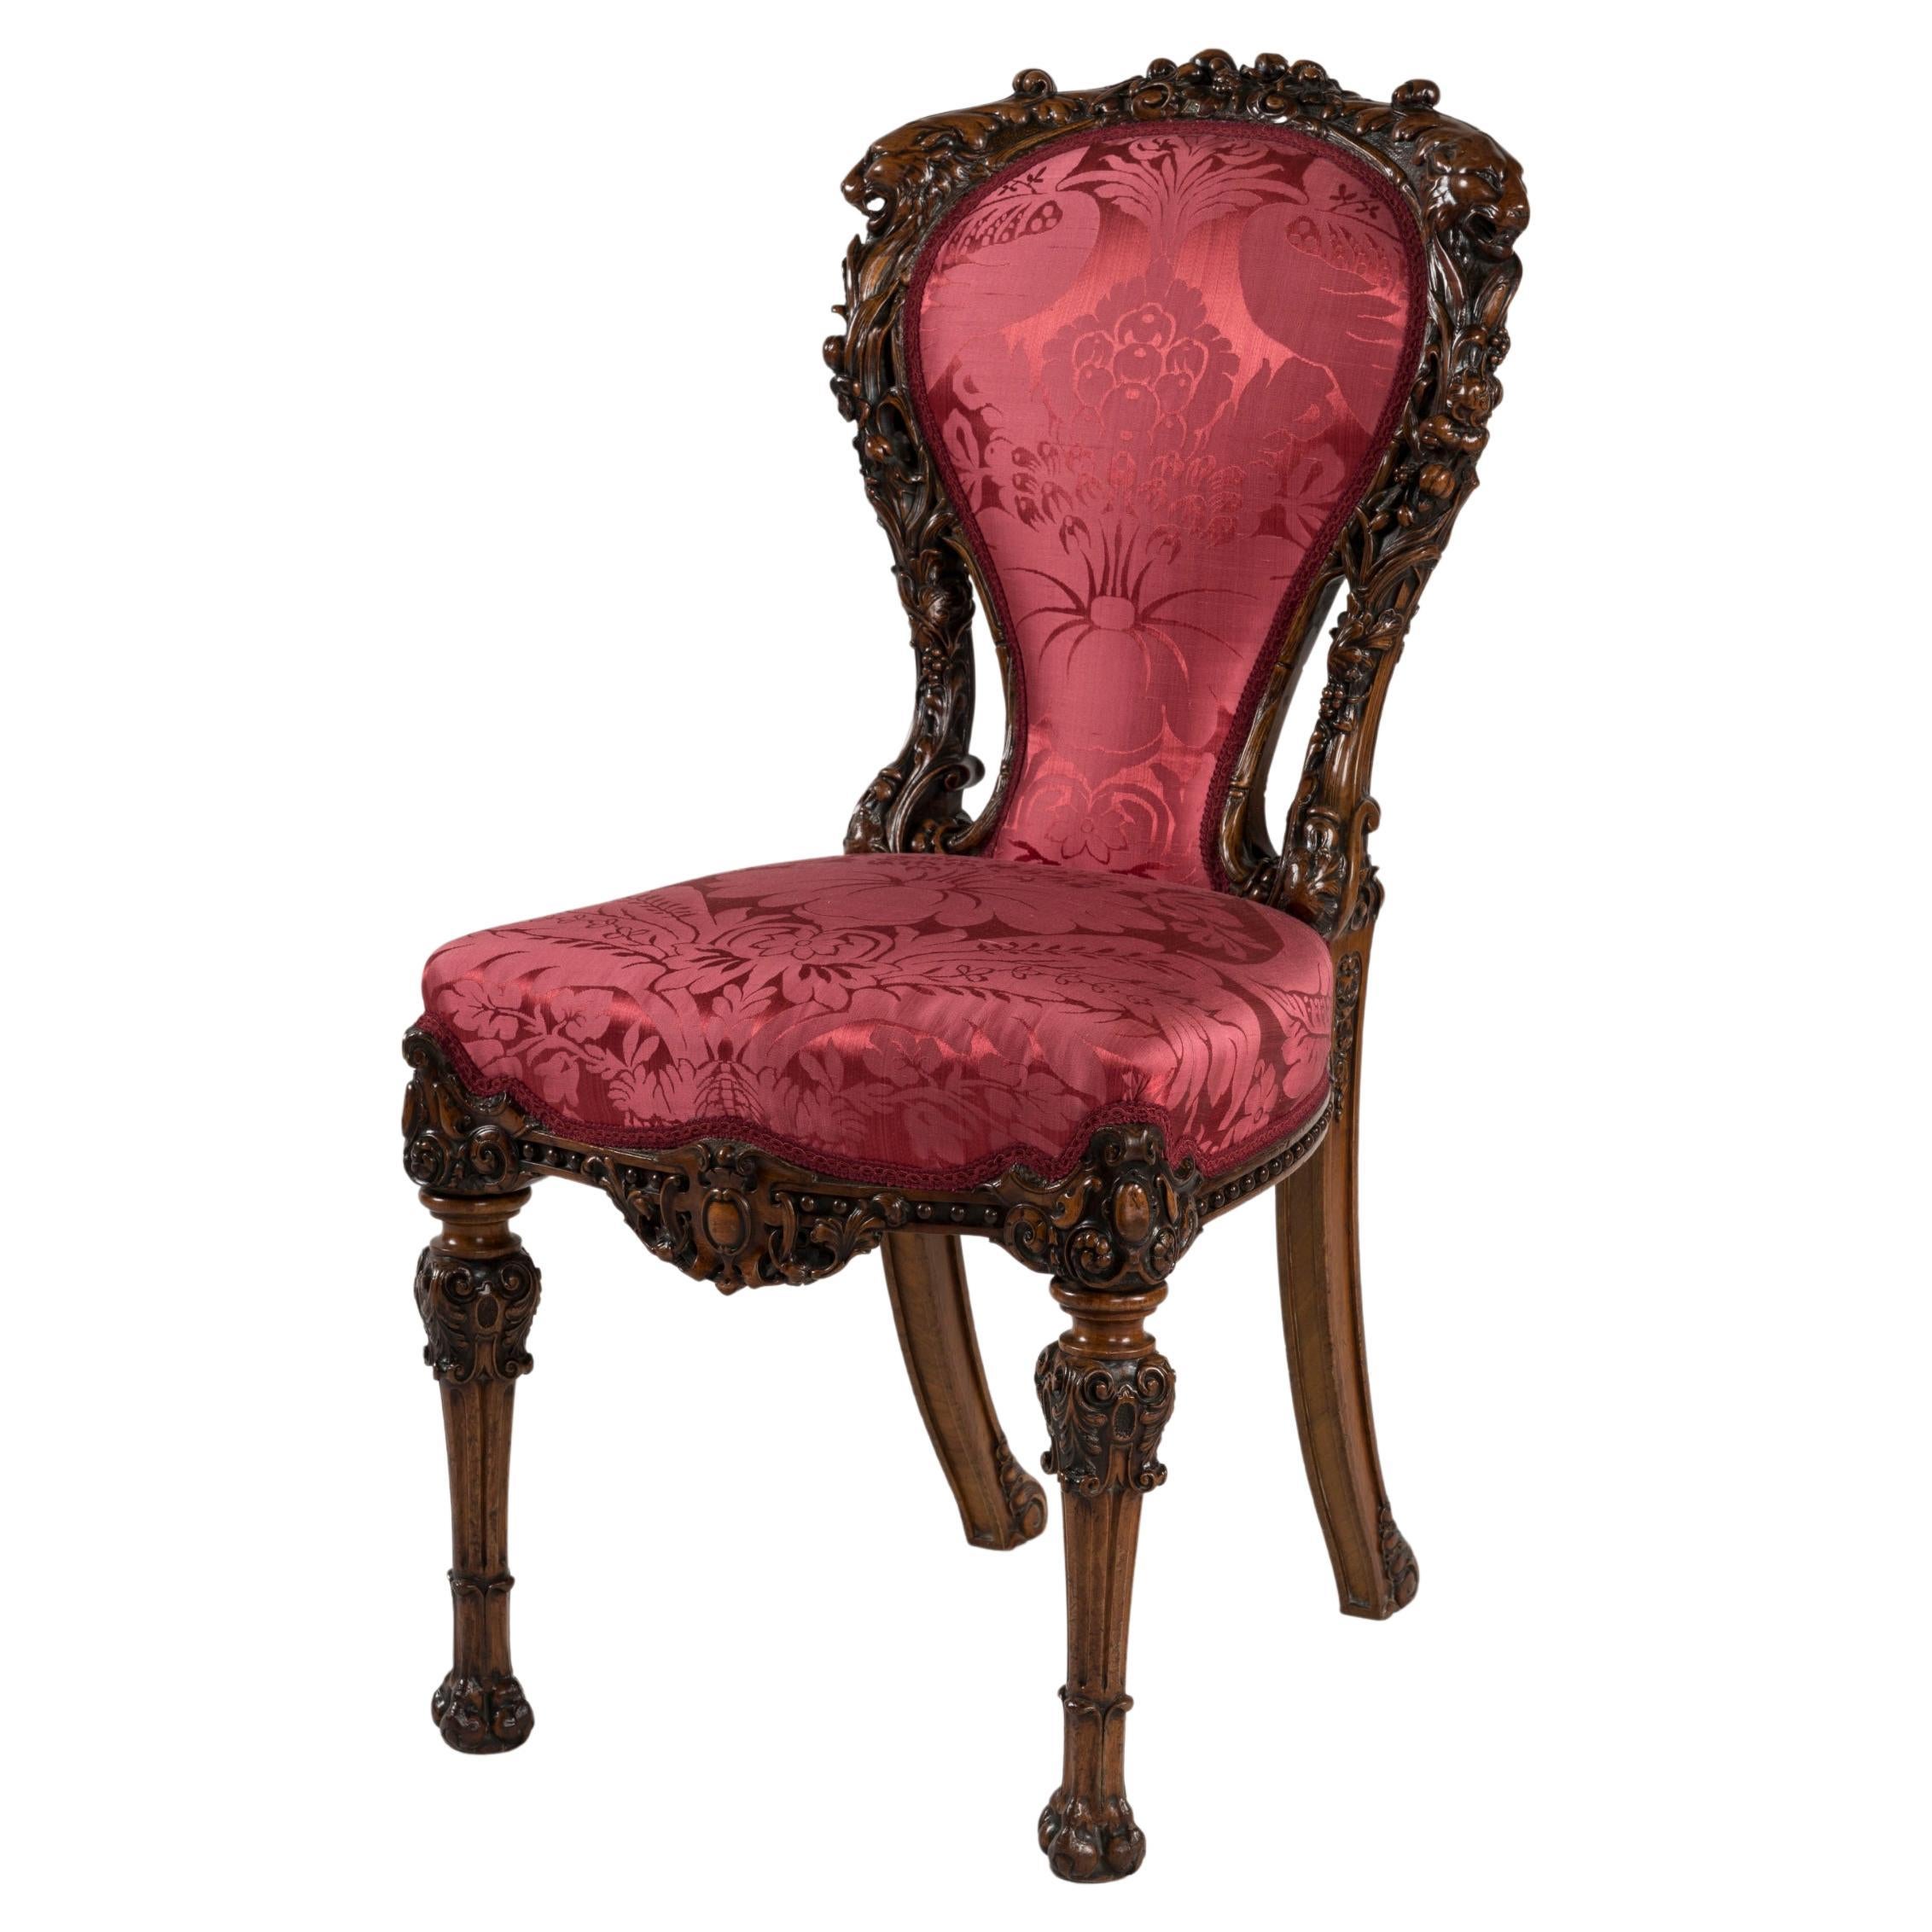 Chaise du milieu du XIXe siècle en noyer sculpté de manière exubérante avec tapisserie rouge rubis